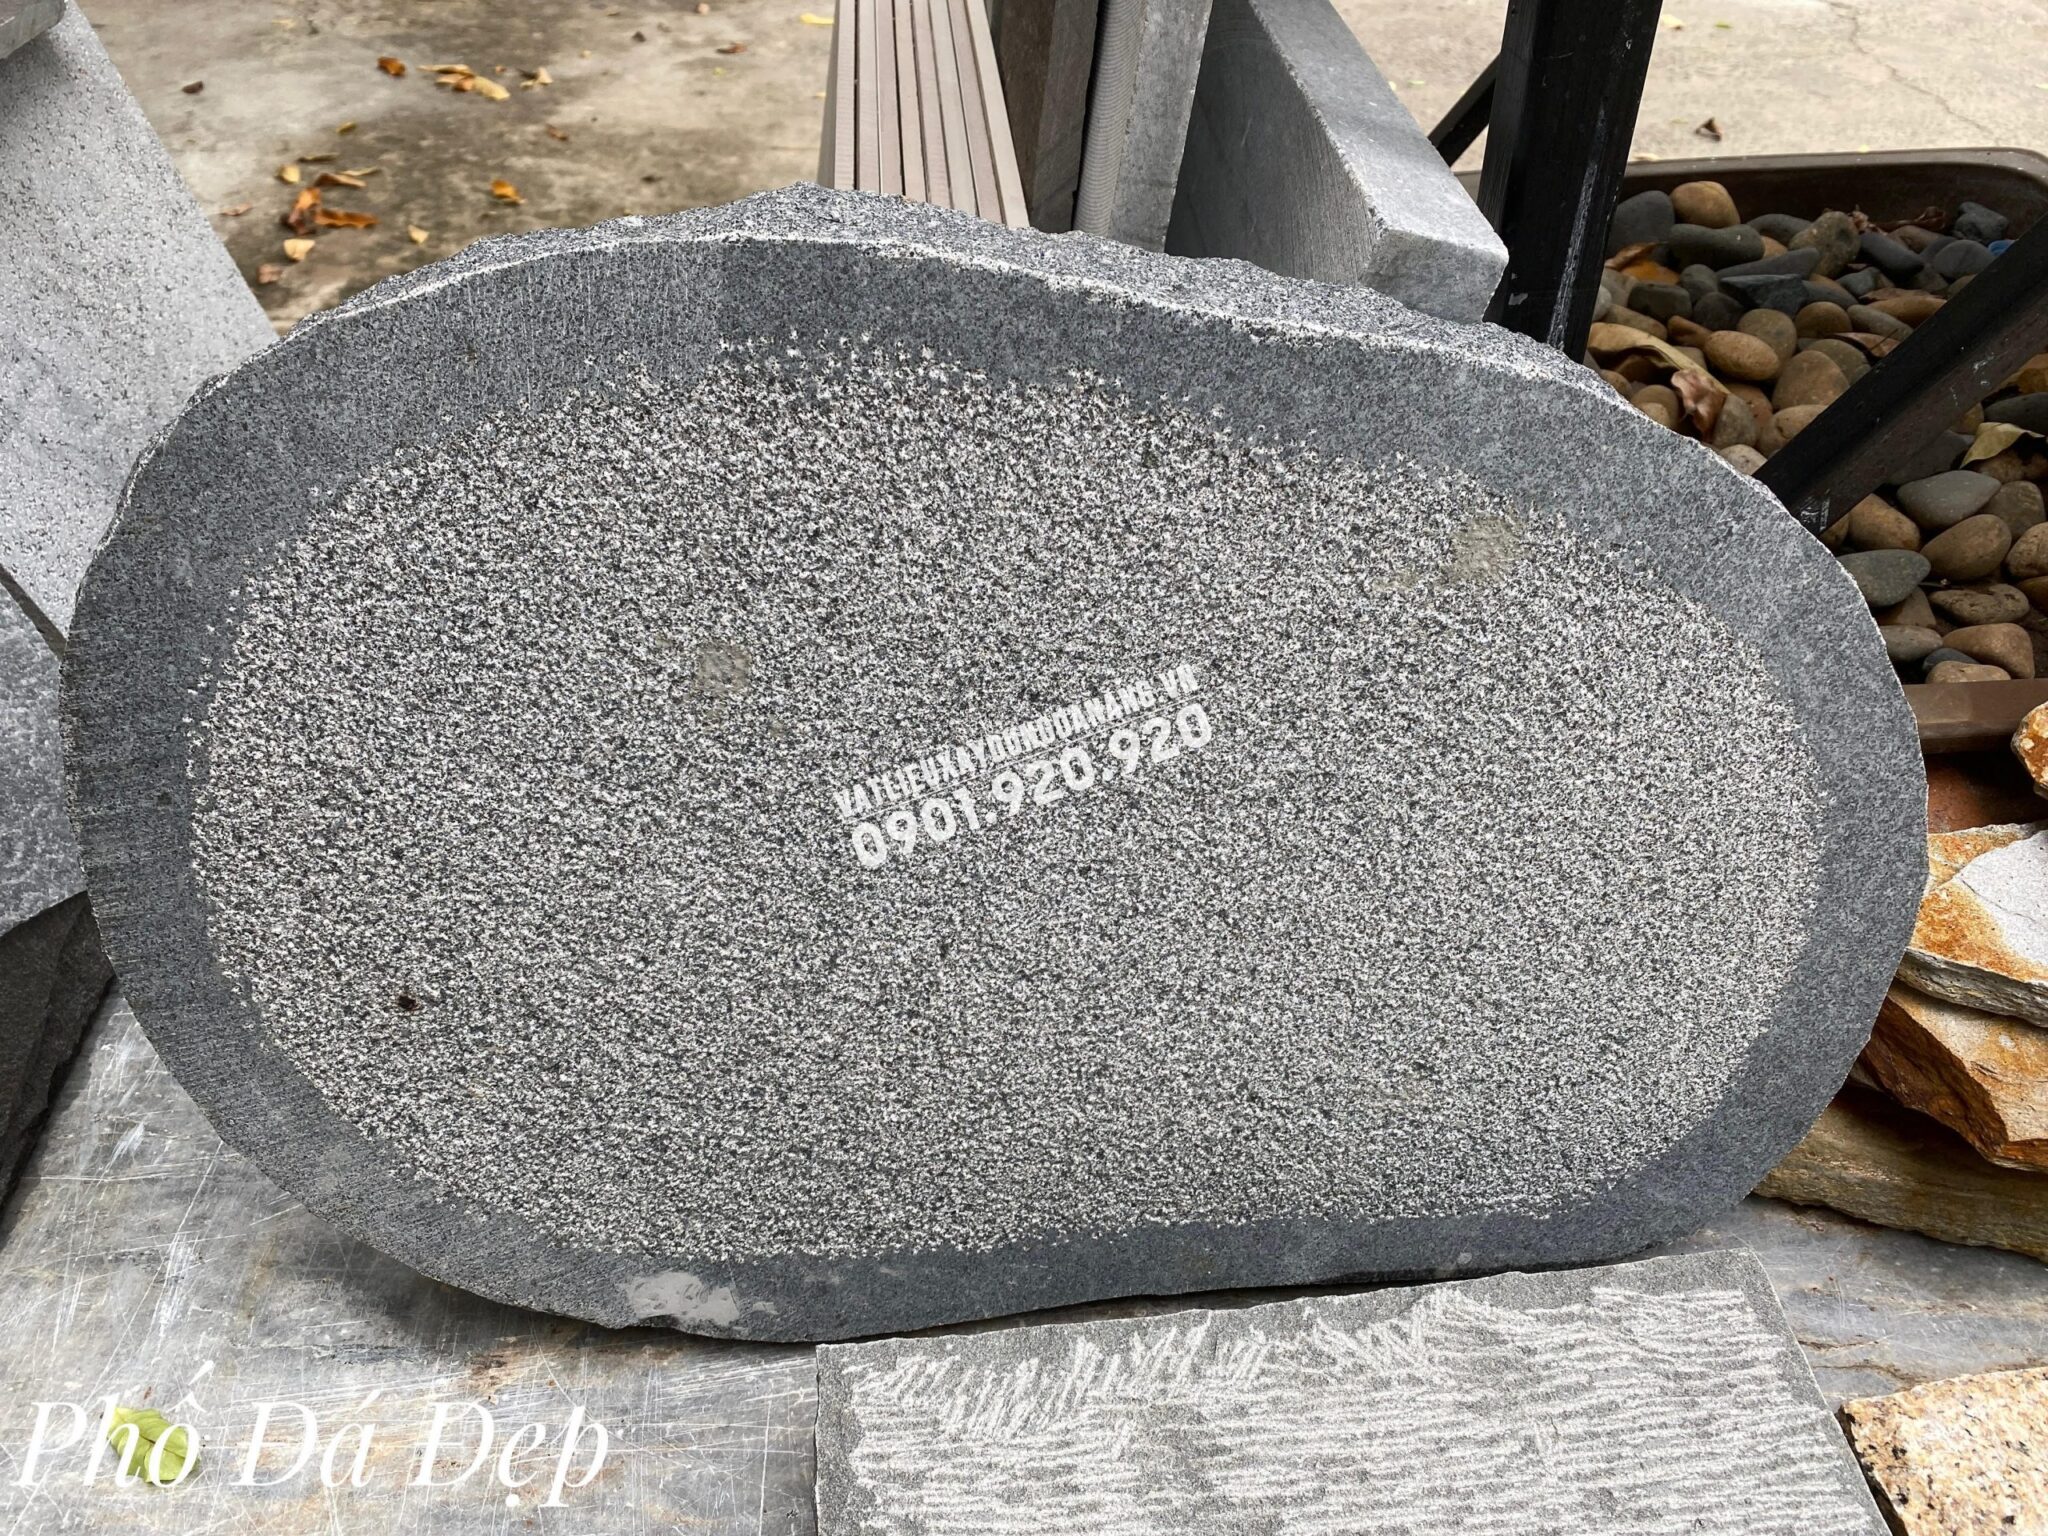 Đá Thớt Băm Granite Đen Ánh Kim - Phố Đá Đẹp